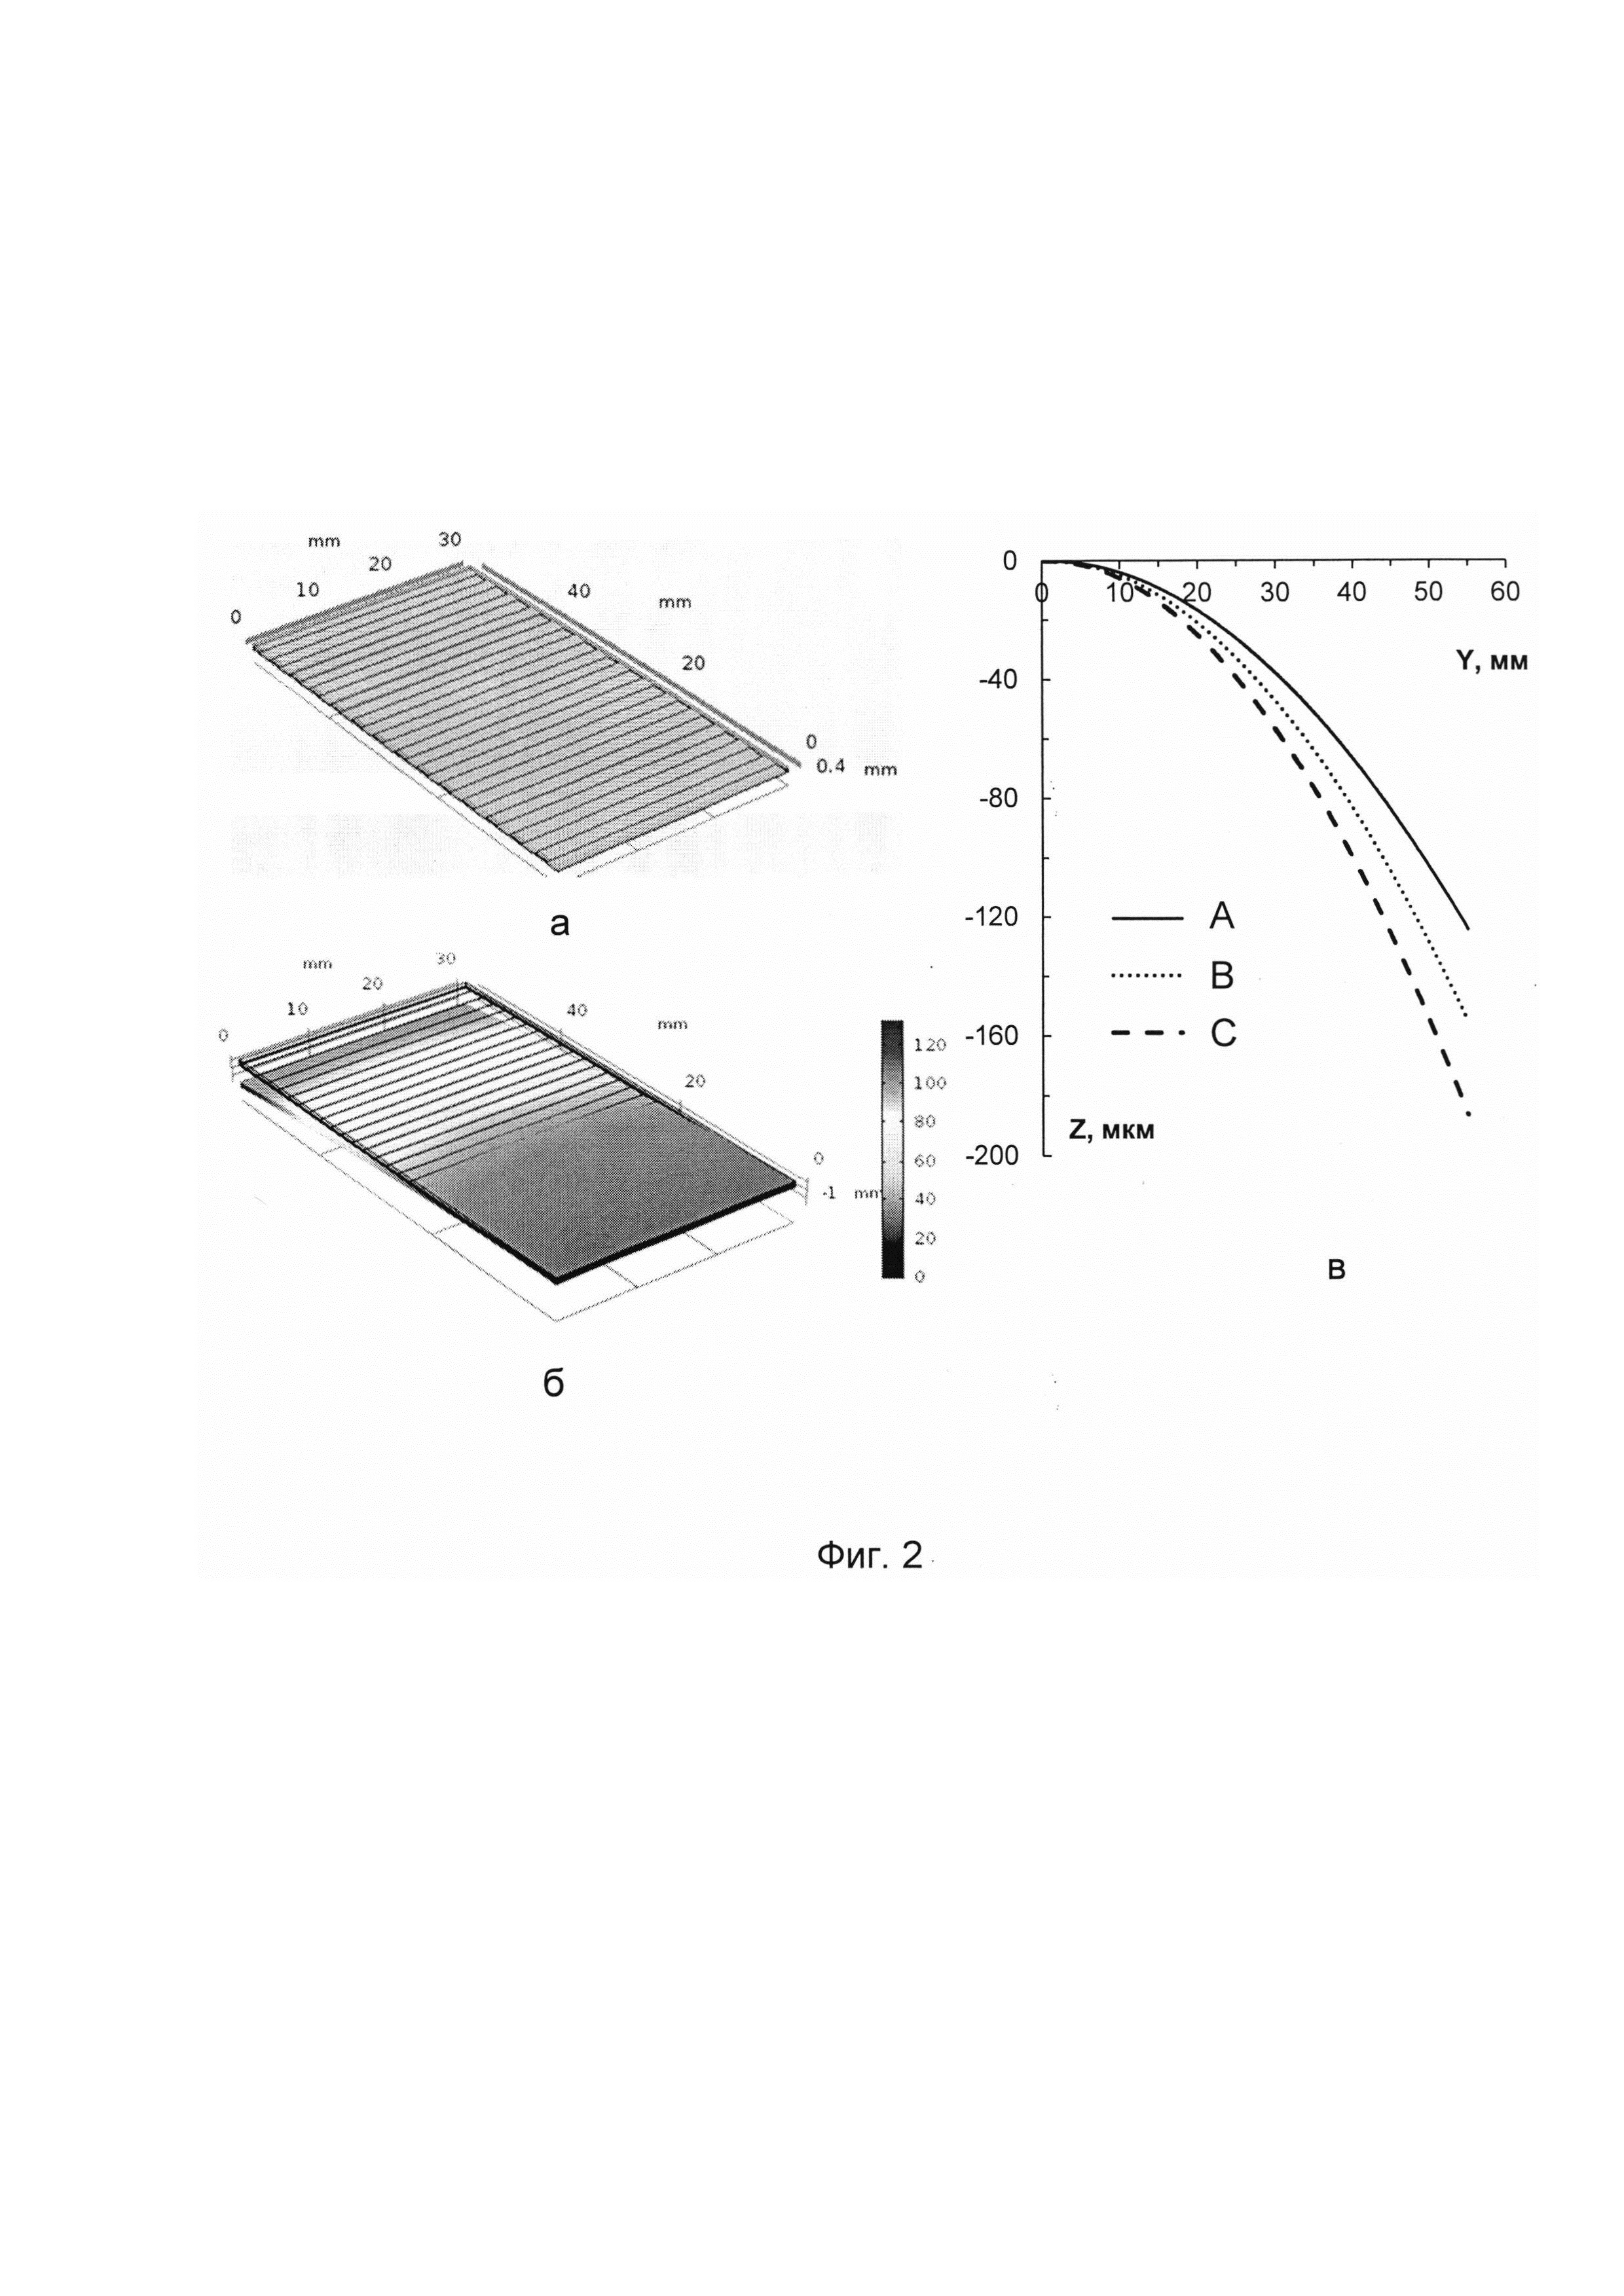 Способ управления кривизной рабочей поверхности монокристаллической пластины дифракционного блока, обеспечивающей коллимацию рентгеновского пучка